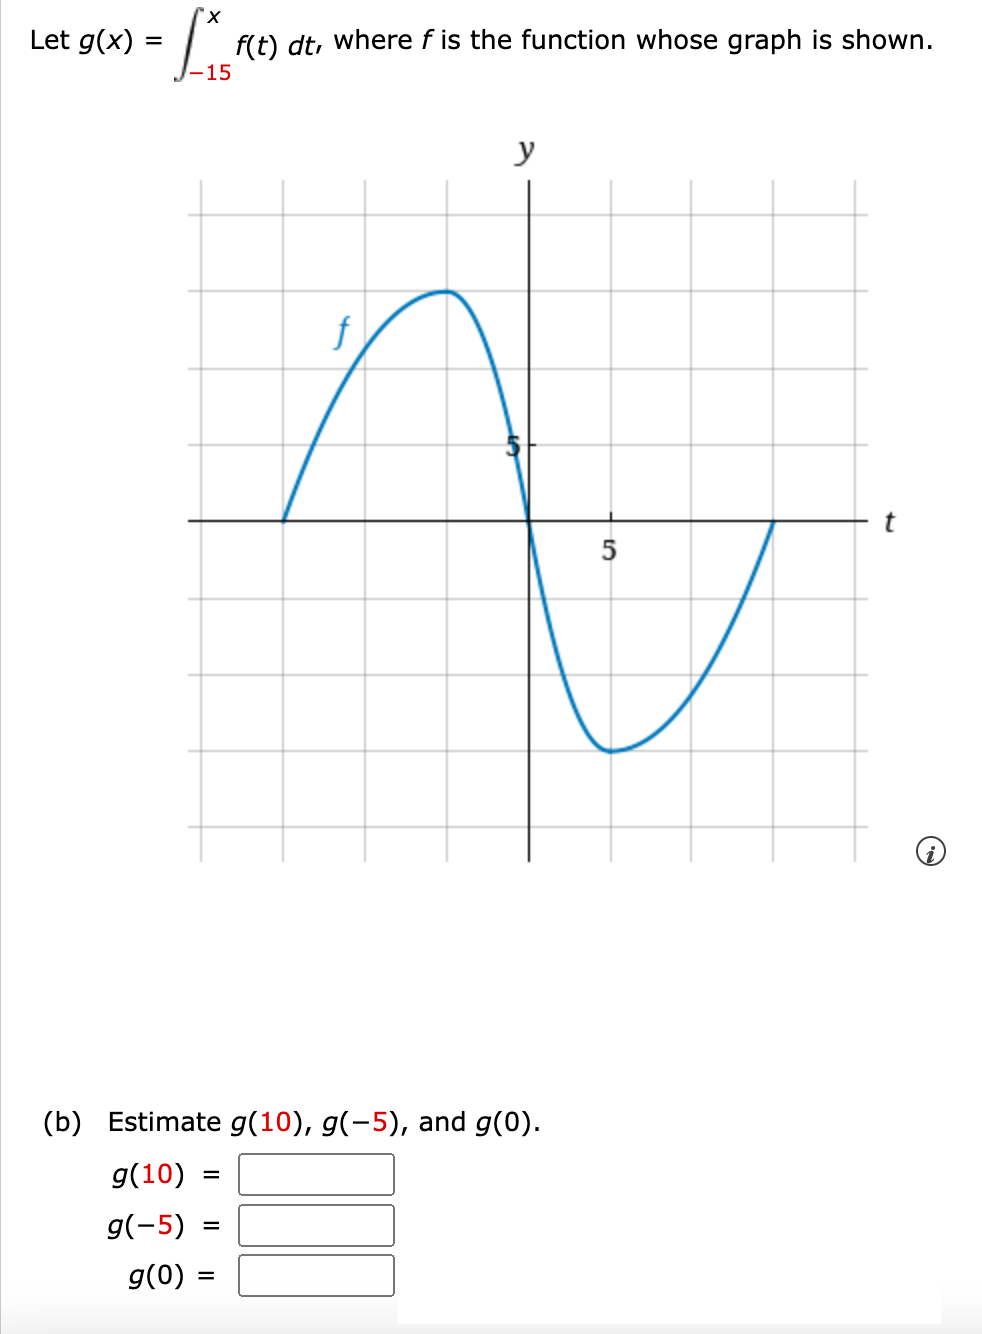 Let g(x)
=
'x
f(t) dt, where f is the function whose graph is shown.
-15
y
f
q
5
(b) Estimate g(10), g(-5), and g(0).
g(10) =
g(-5) =
g(0) :
=
t